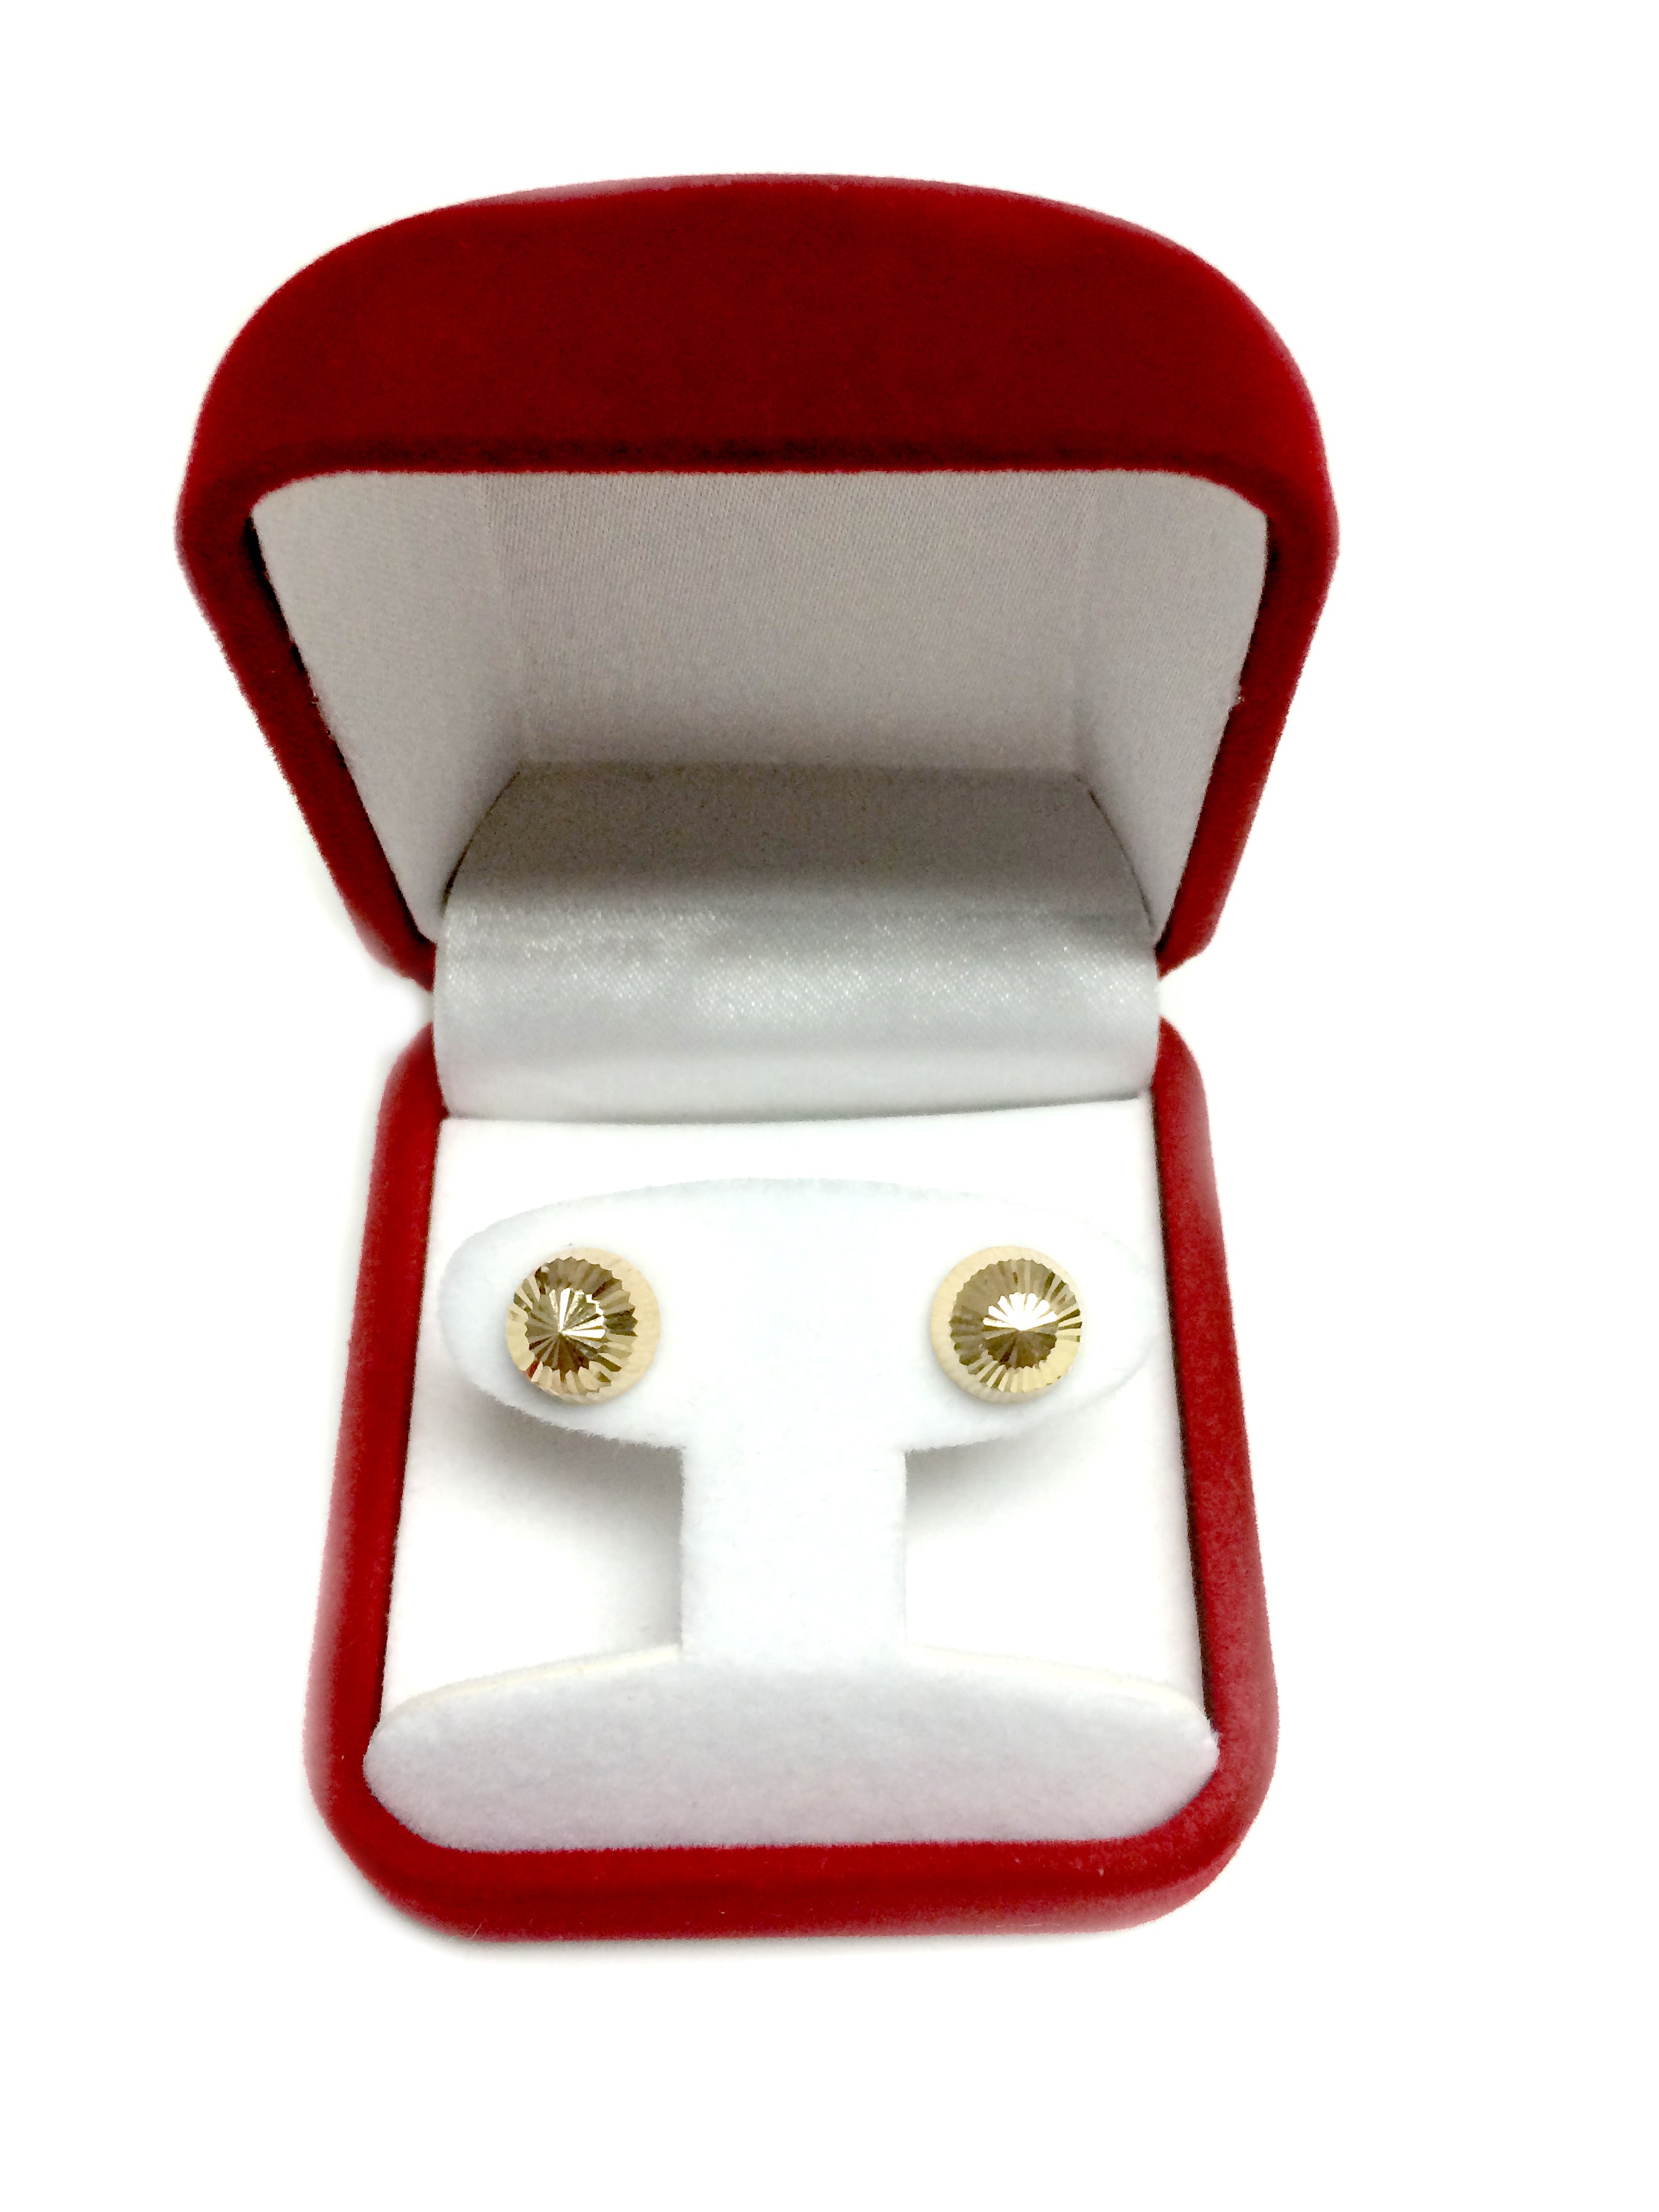 14k gull skinnende diamantskårne runde øredobber, 10 mm fine designersmykker for menn og kvinner